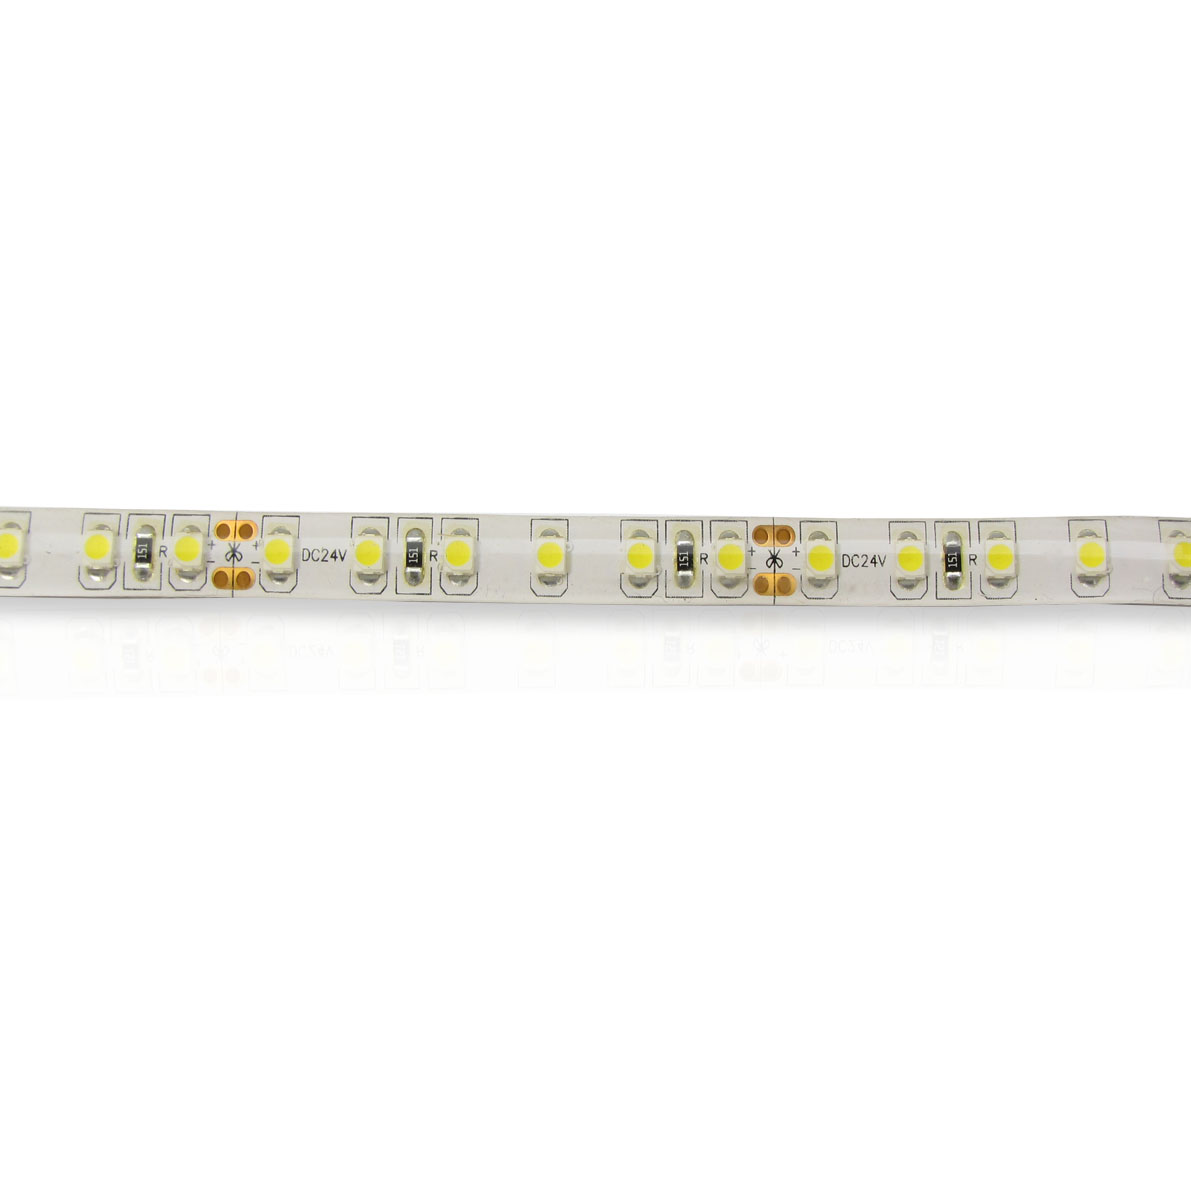 светодиодная лента standart pro class, 3528, 120 led/m, warm white, 24v, ip65, артикул 54280